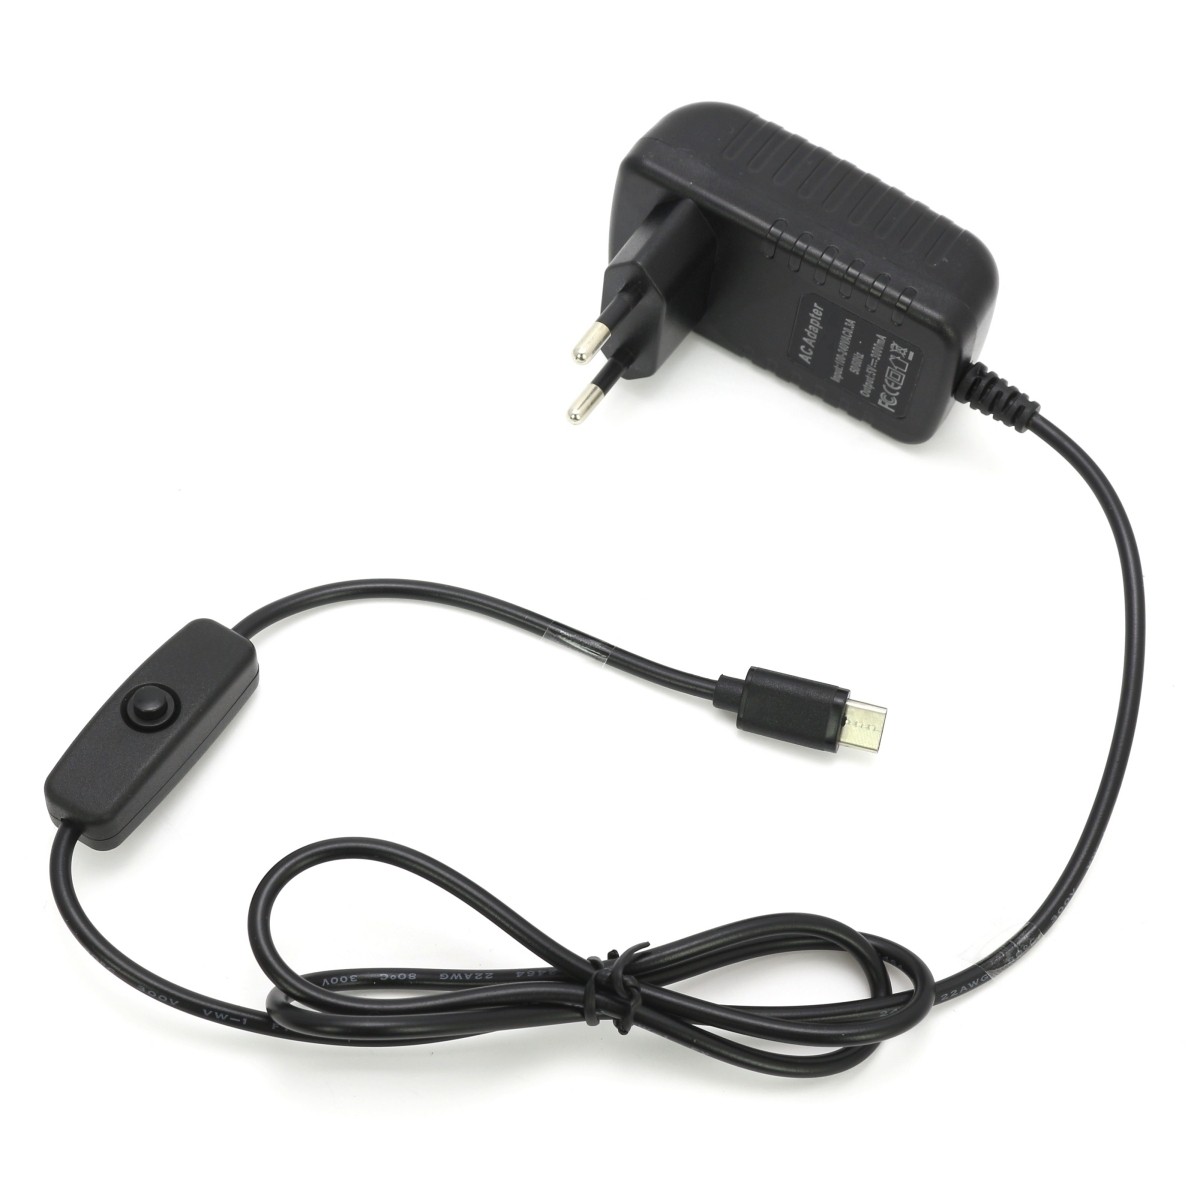 Prise USB Secteur, 2 Pack Chargeur USB 5V 1A Embout Adaptateur